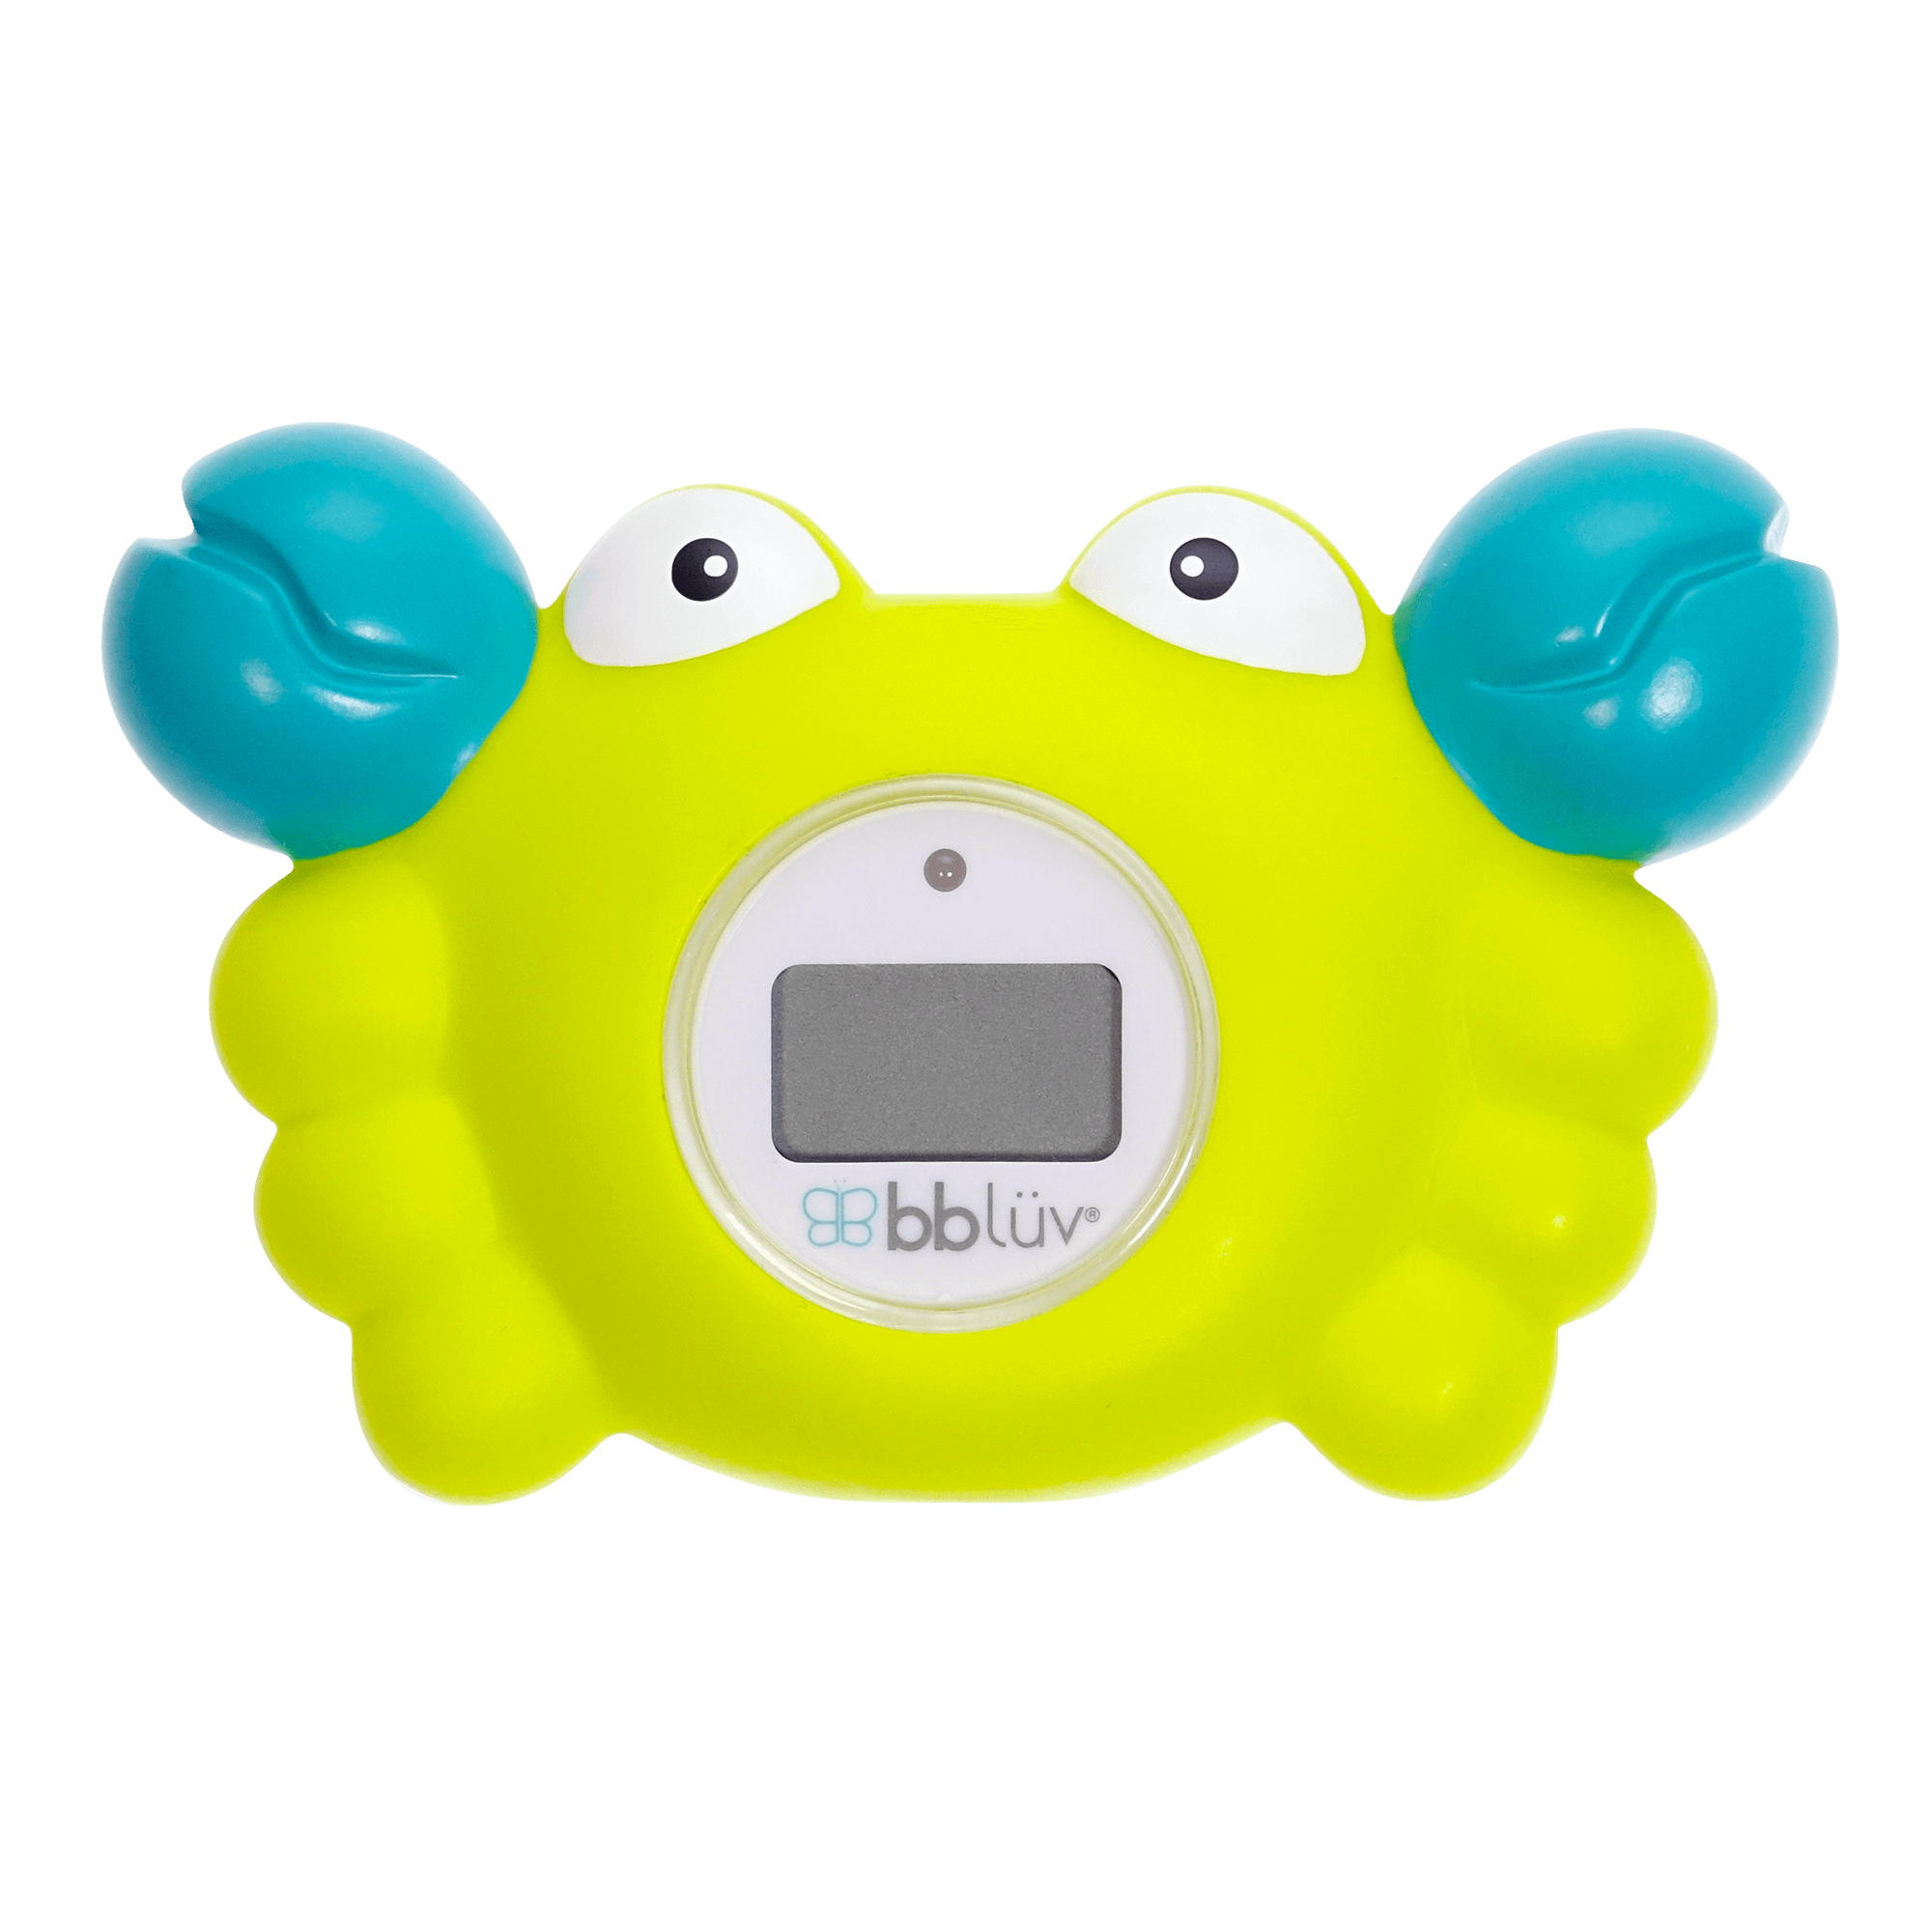 Thermomètre de bain pour bébé, jouet de baignoire en forme de crabe,  thermomètre électronique d'eau pour maman nouveau-né